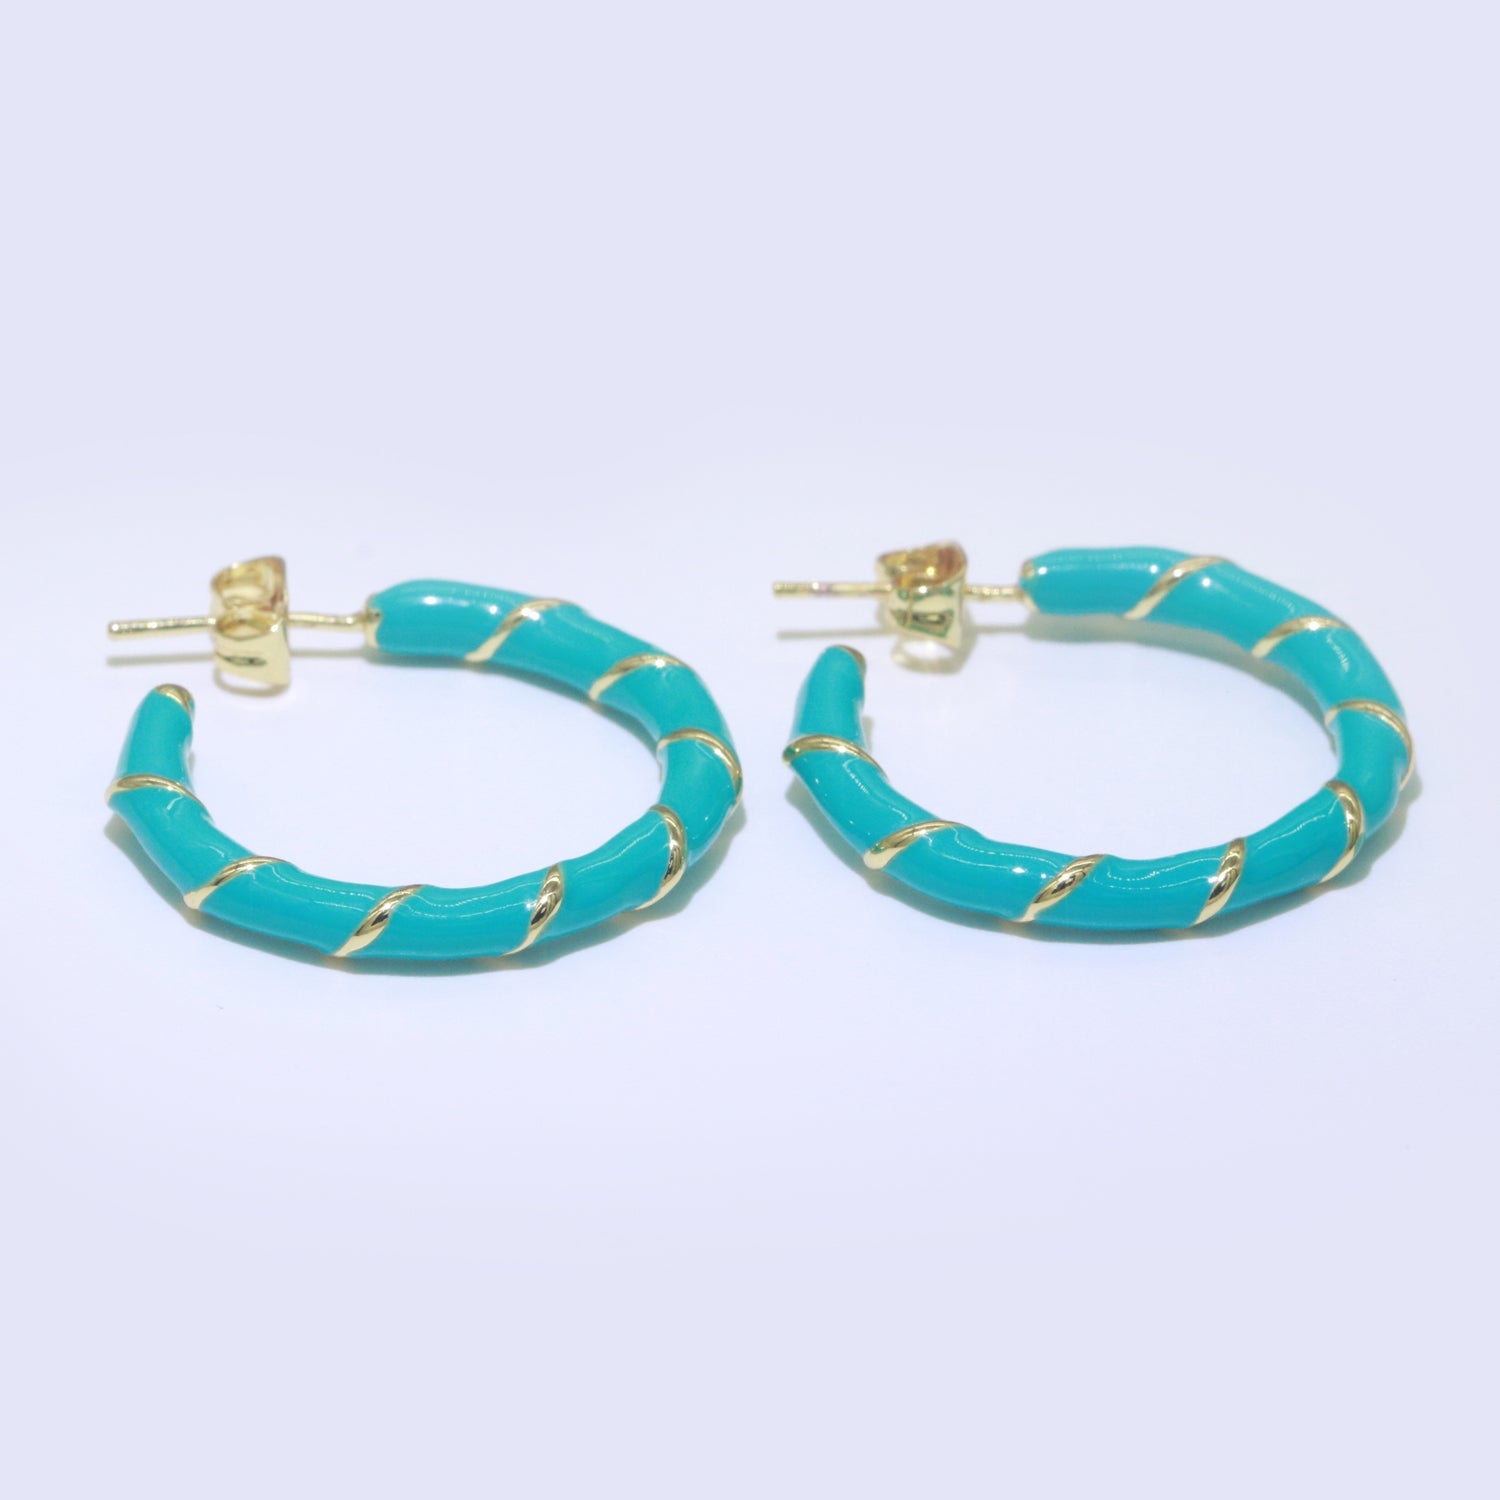 Teal Enamel Hoop Earring with Gold Swirl 26mm Hoop earring Jewelry Gift - DLUXCA